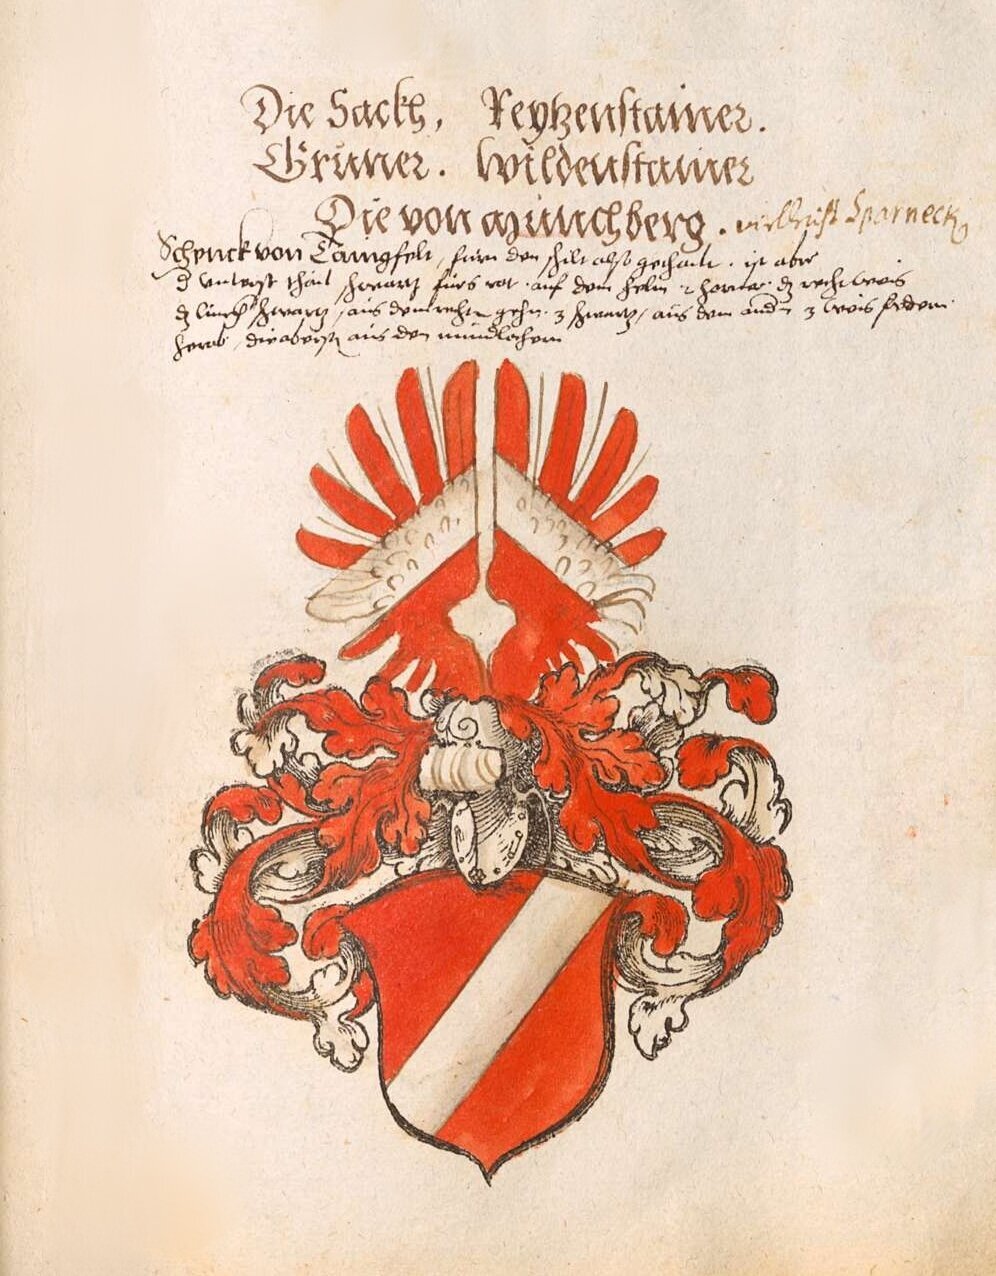 Wappen_der_Säcke_im_Wappenbuch_des_Heiligen_Römischen_Reiches,_Mitte_16._Jh..jpeg